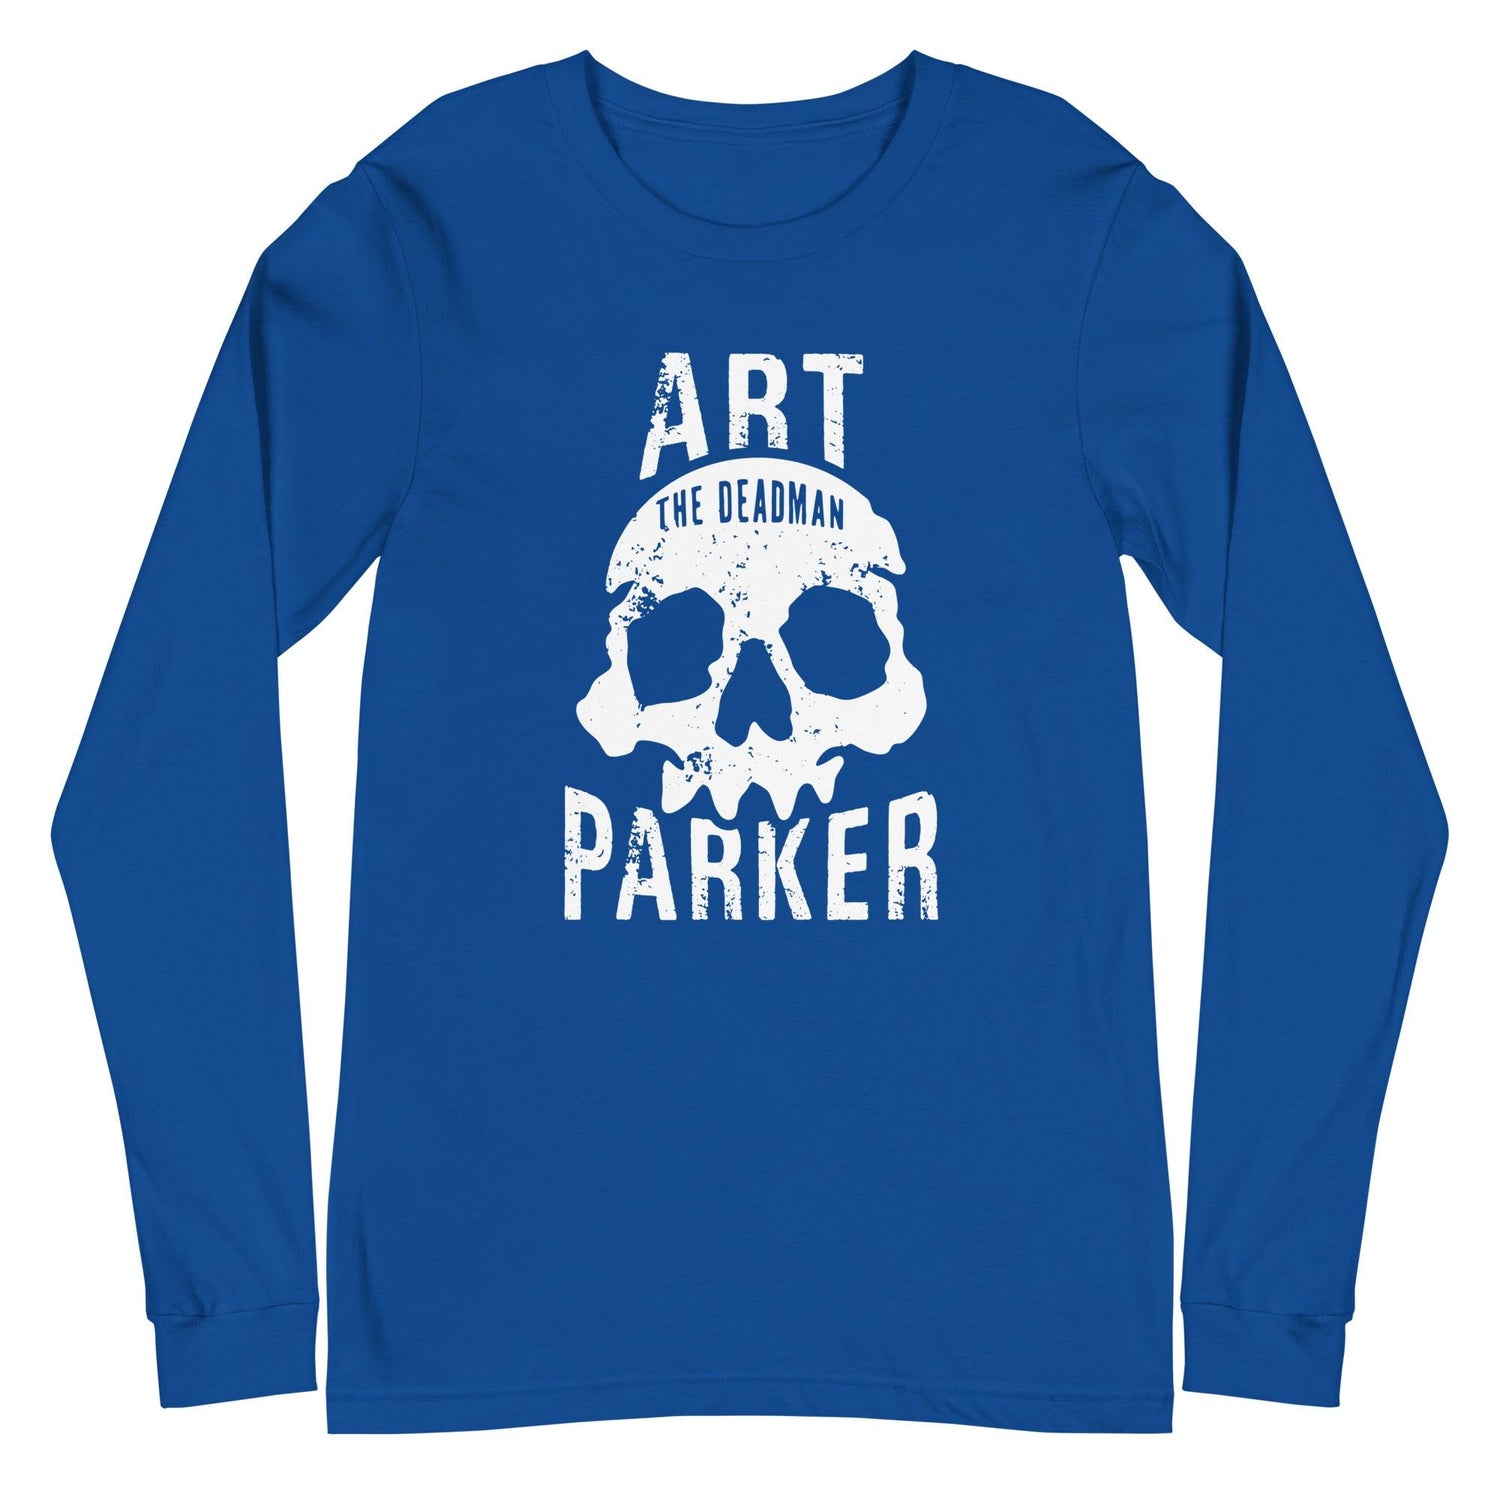 Art Parker "Deadman" Long Sleeve Tee - Fan Arch